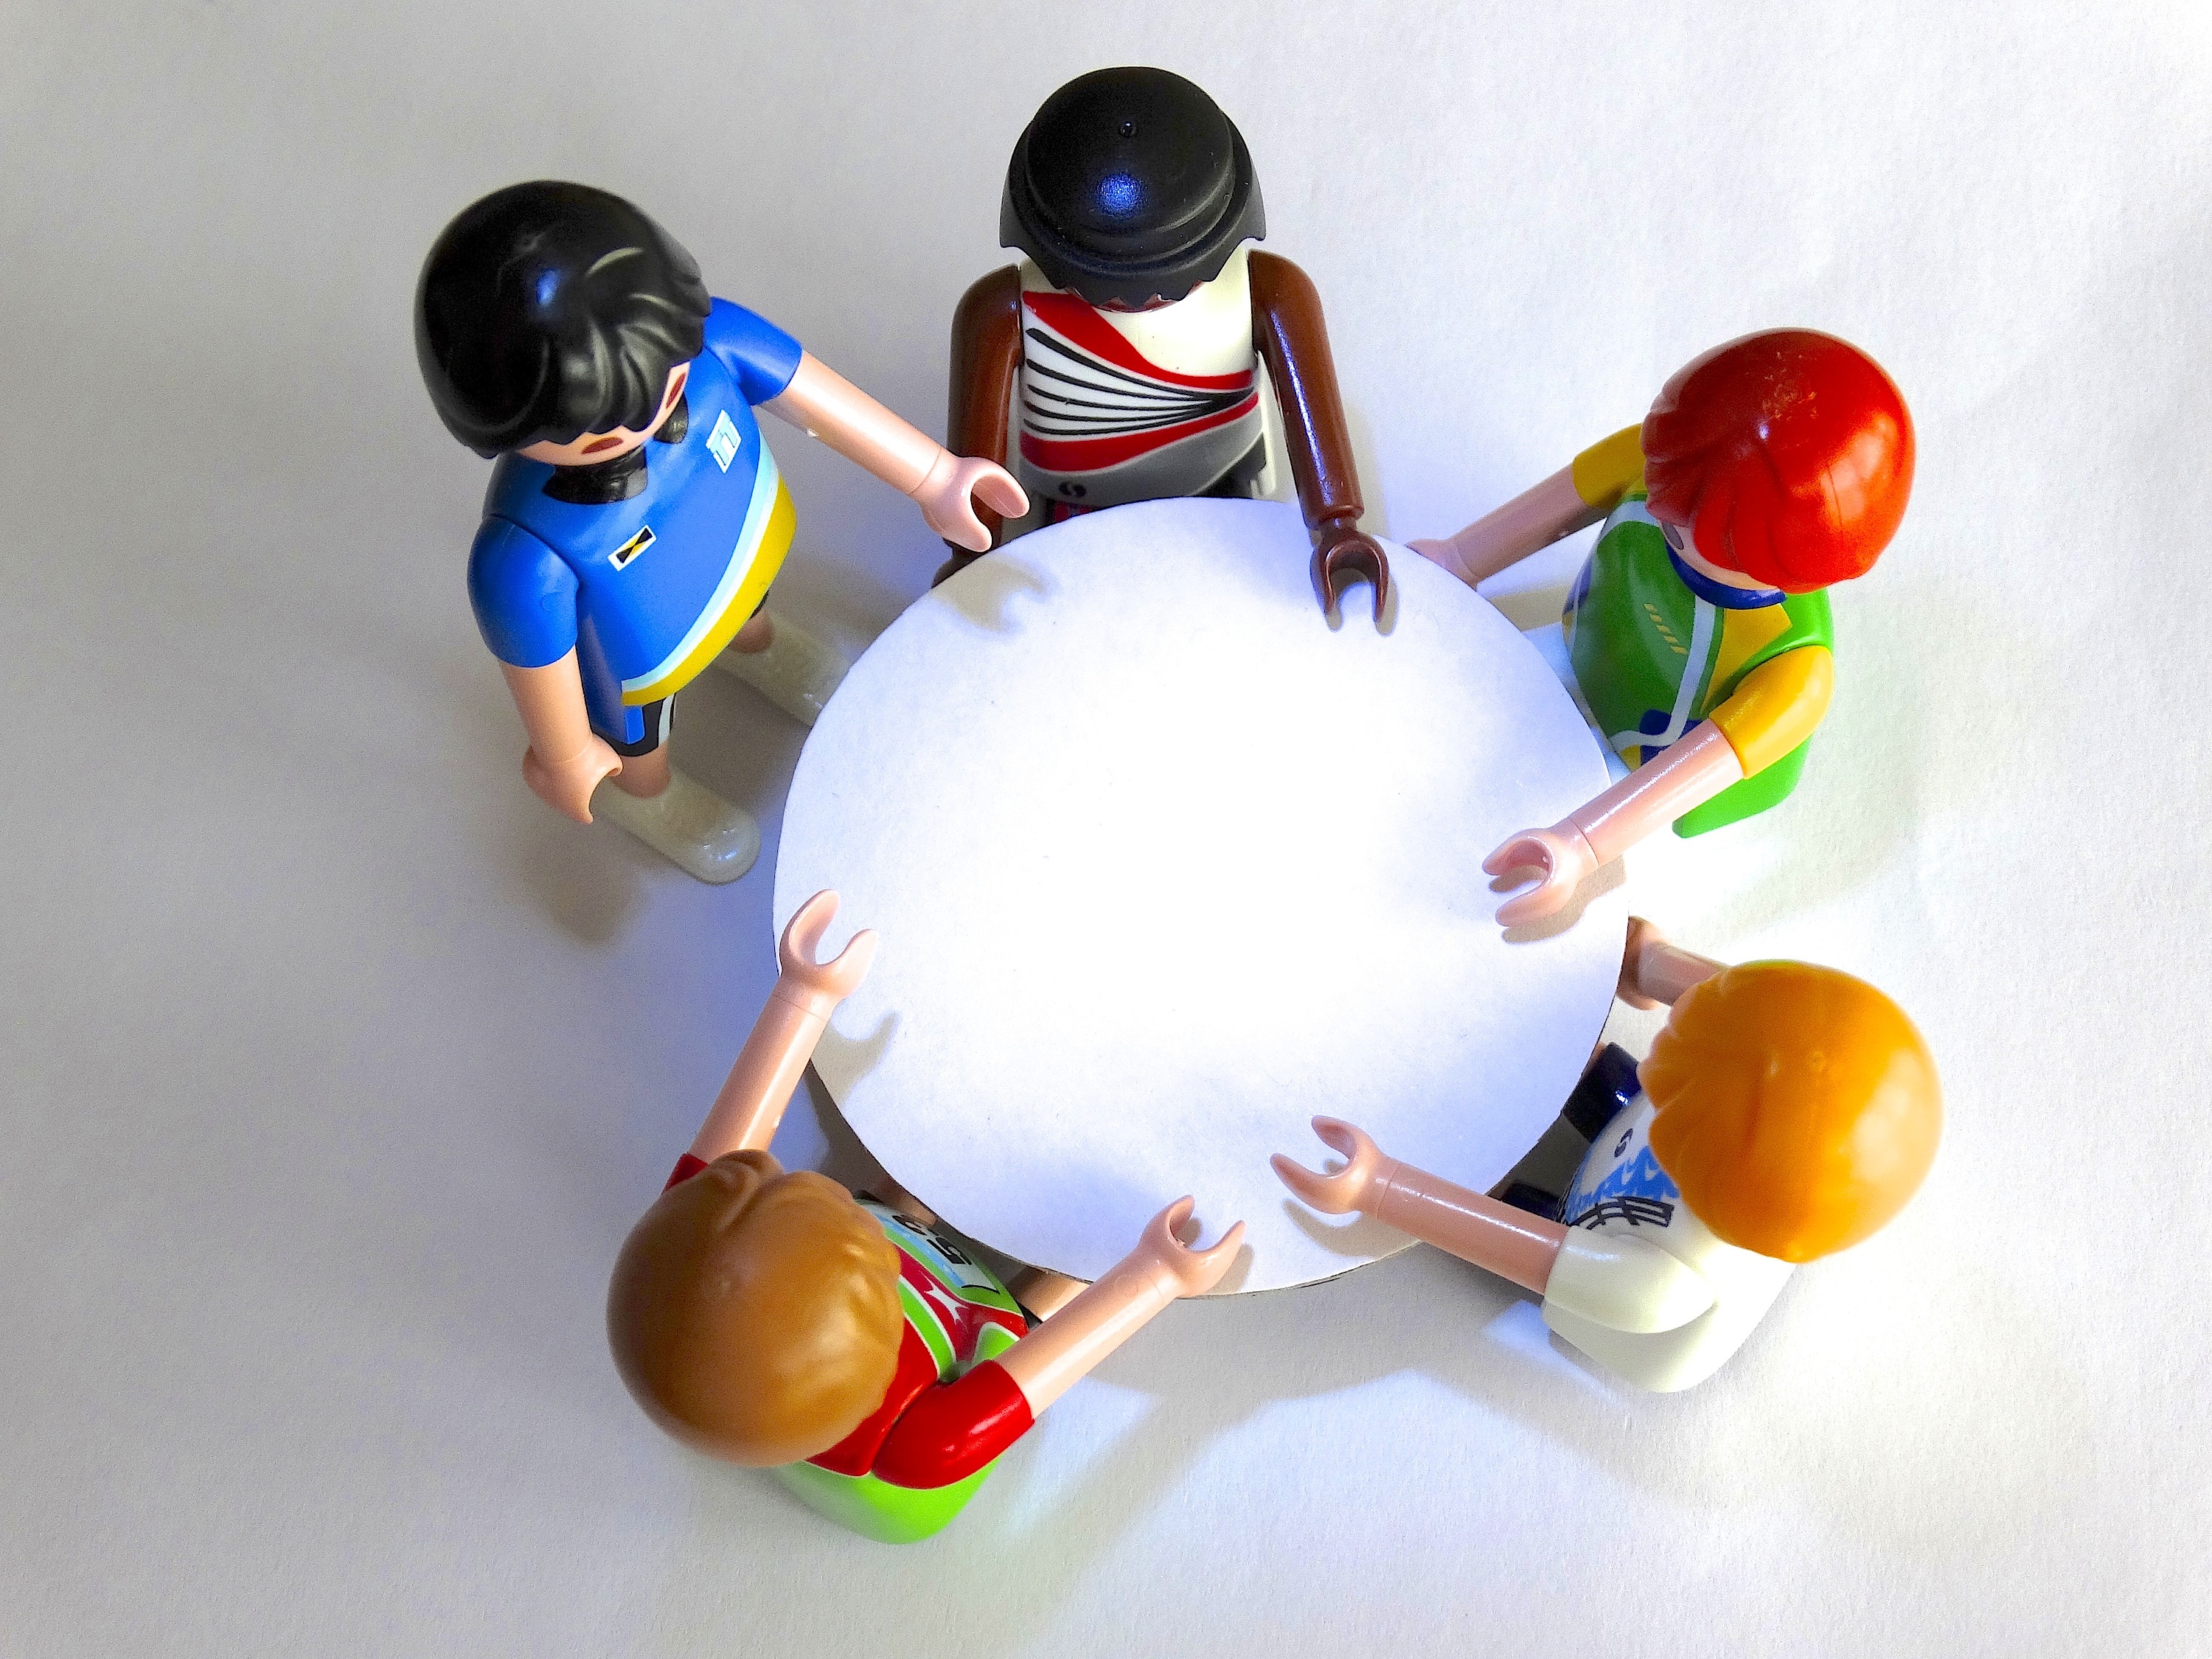 La imagen muestra desde arriba cinco muñecos sentados alrededor de una mesa redonda.